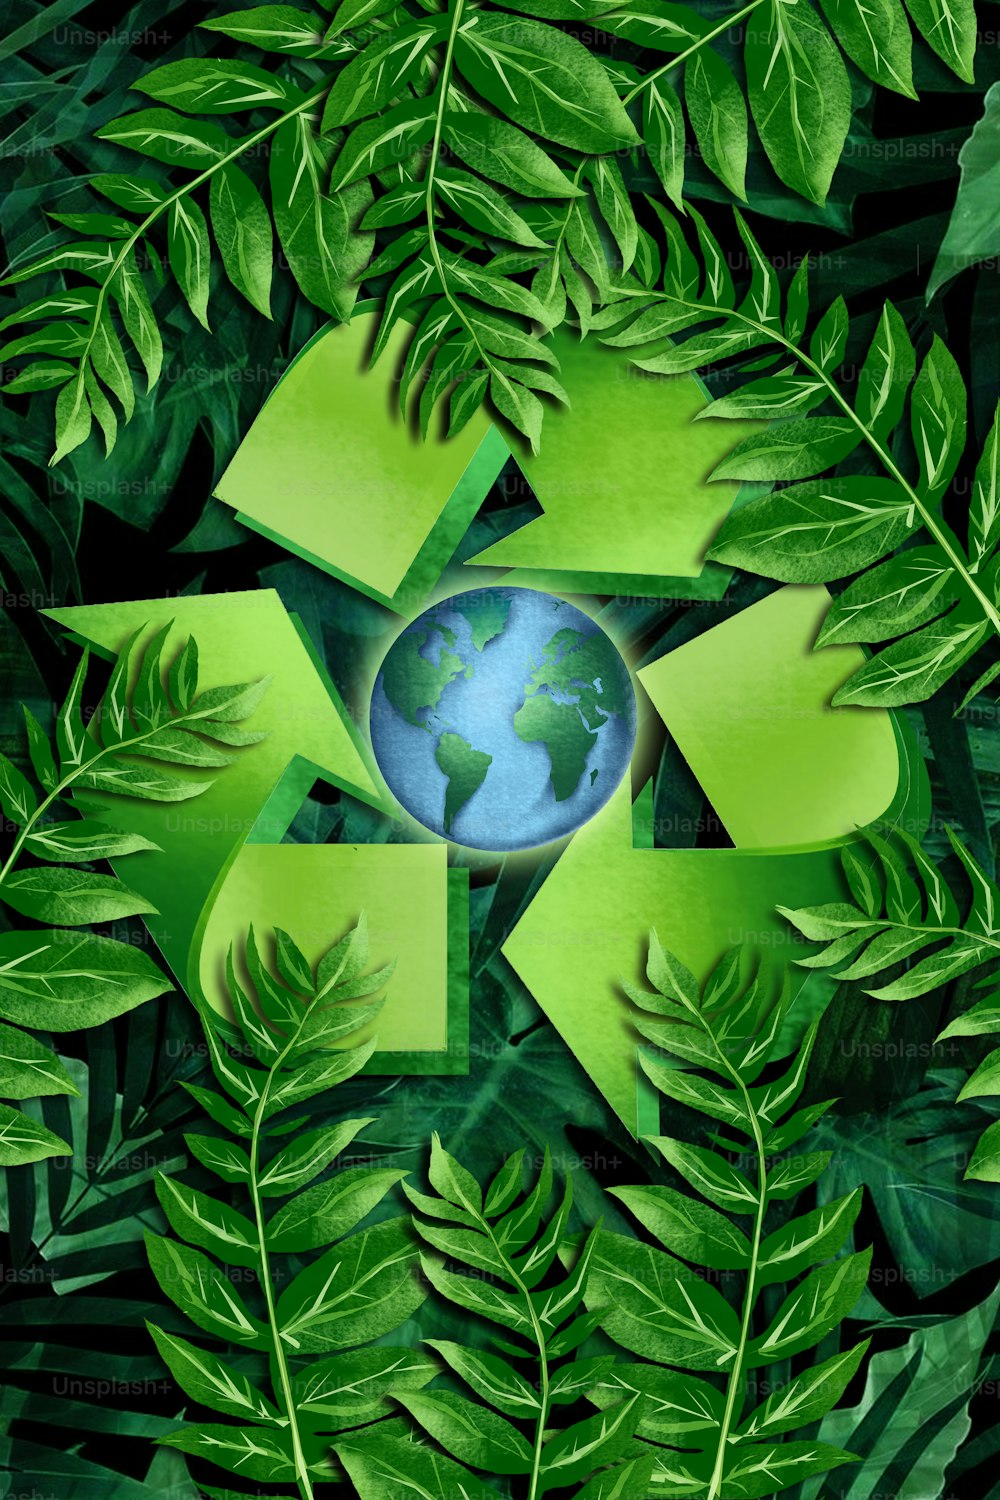 재생 가능 에너지와 지속 가능한 개발. 혁신적인 녹색 에너지 생태계.